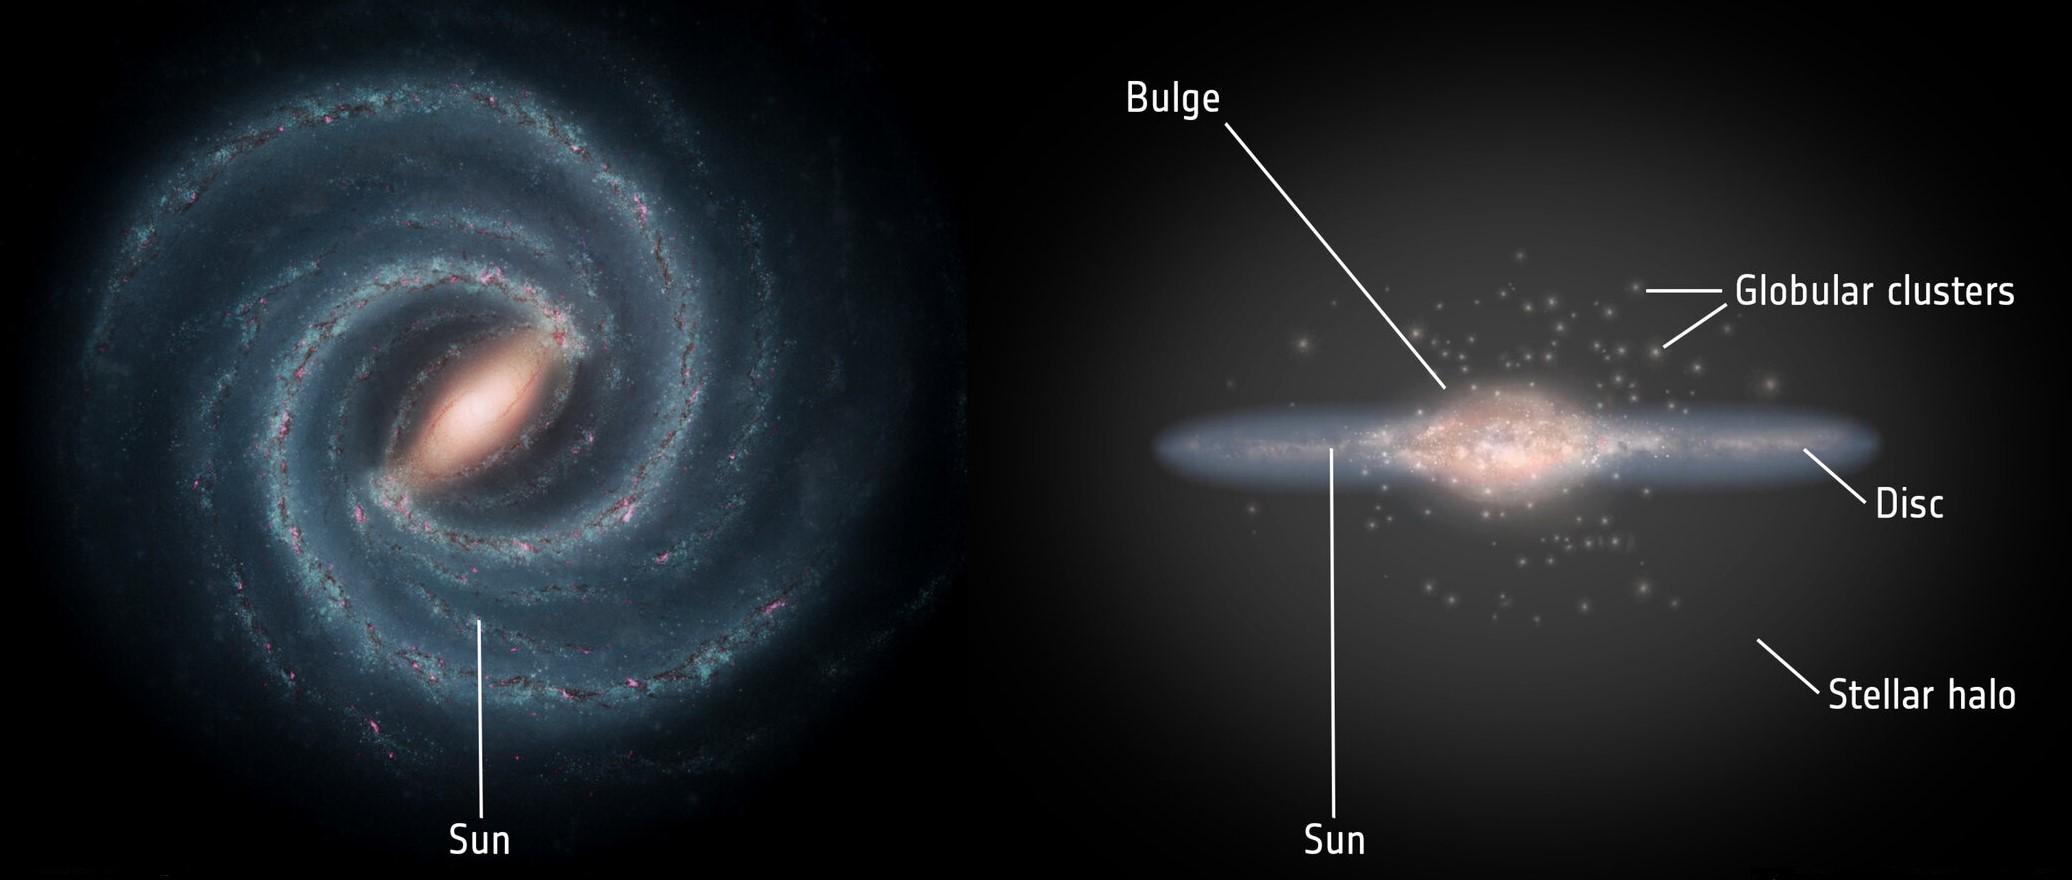 À gauche, la structure en spirale du disque galactique, où se trouvent la majorité des étoiles, entremêlées d'un mélange diffus de gaz et de poussière cosmique. Le disque mesure environ 100'000 années-lumière de diamètre; le Soleil se trouve à peu près à mi-chemin entre son centre et sa périphérie.À droite, la forme aplatie du disque. Les observations révèlent l'existence d'une sous-structure: un fin disque de quelque 700 années-lumière de haut noyé dans un disque d'une épaisseur d'environ 3000 années-lumière peuplé d'étoiles plus anciennes.Visible également, le renflement galactique, situé dans la partie centrale de la Voie lactée, abrite environ 10 milliards d'étoiles, principalement vieilles et rouges. Ce renflement a une forme générale allongée qui ressemble à une barre en forme de cacahuète, avec une demi-longueur d'environ 10'000 années-lumière, ce qui fait de la Voie lactée une galaxie spirale barrée.Au-delà se trouve le halo stellaire, une structure à peu près sphérique d'un rayon d'environ 100'000 années-lumière, contenant des étoiles isolées ainsi que de nombreux amas globulaires – de grands conglomérats compacts d'étoiles parmi les plus anciennes de la galaxie. À plus grande échelle, la Voie lactée est entourée d'un halo encore plus vaste de matière noire invisible. [Right: ESA; layout: ESA/ATG medialab - Left: NASA/JPL-Caltech]